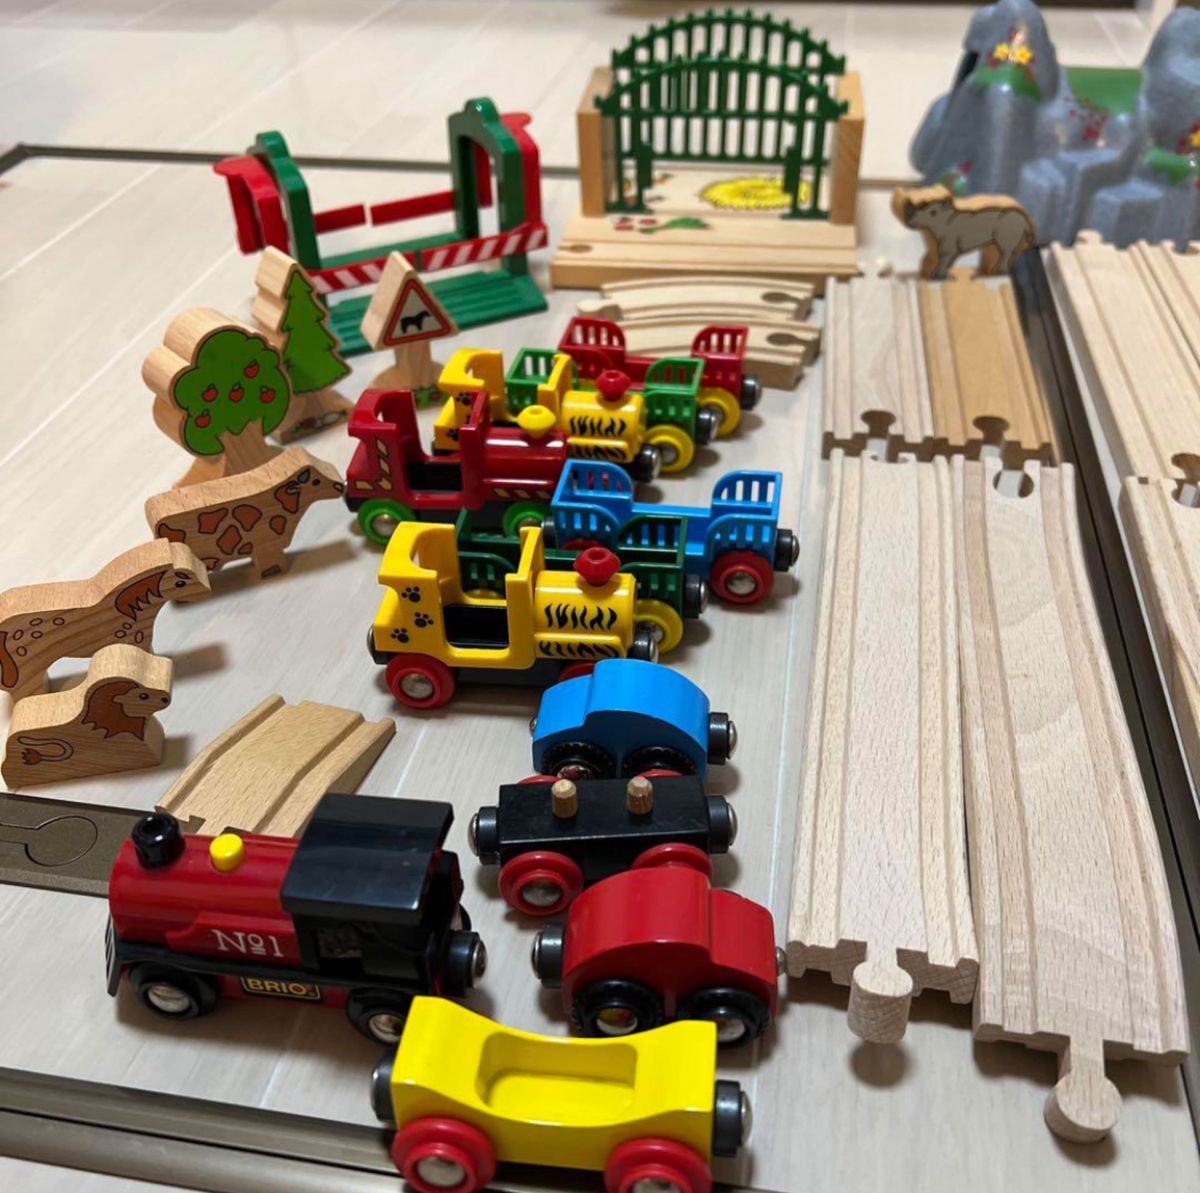 美品　BRIO 2セットまとめ売り　木製レール レール ブリオ おもちゃ 電車　クリスマスプレゼント